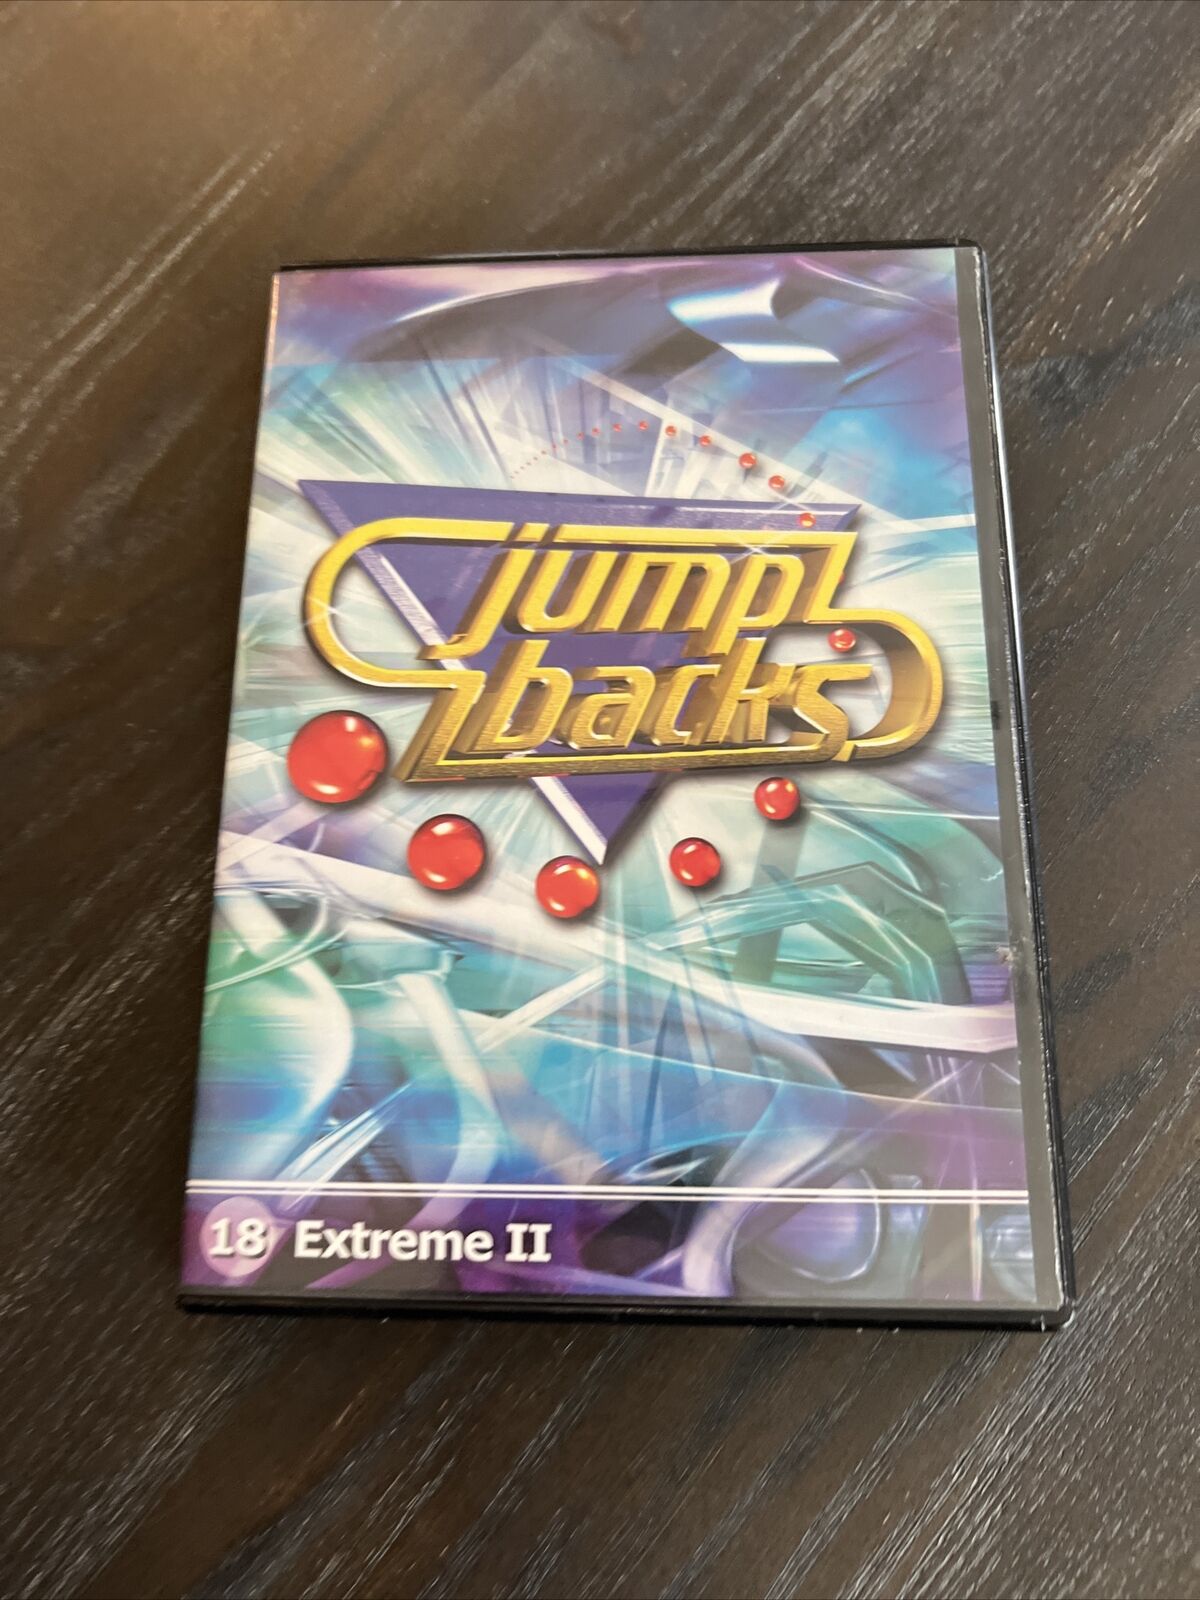 Digital Juice Jump Backs 18 Extreme II Vintage Pc Game/software